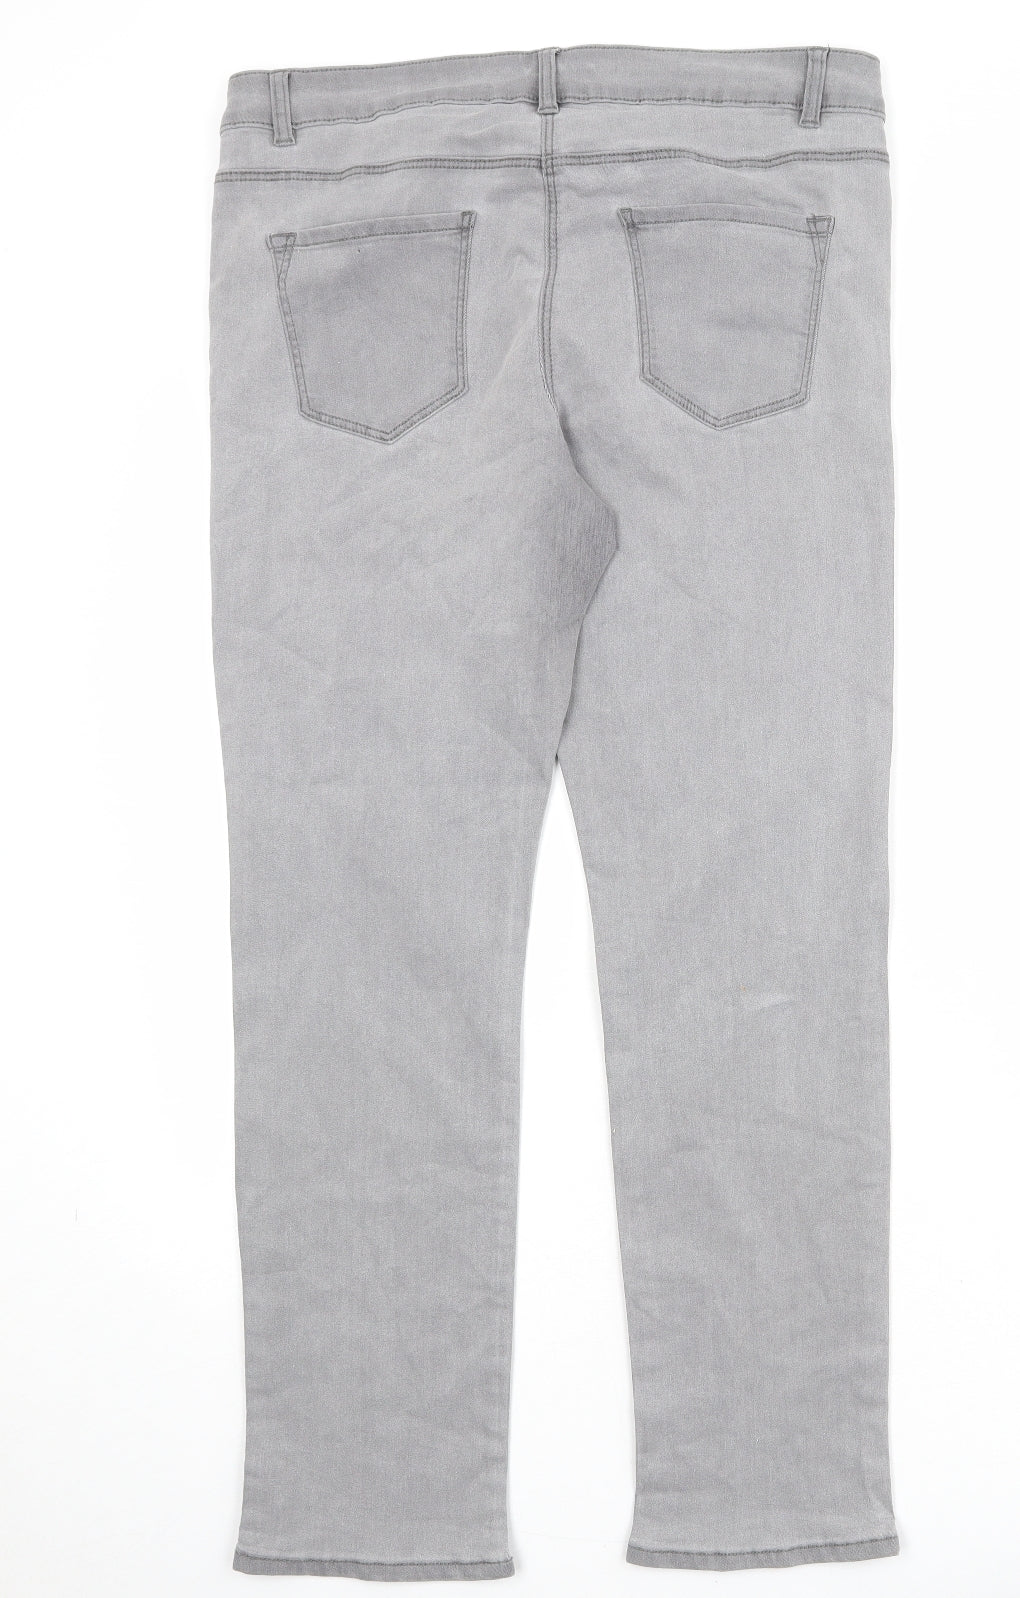 Bonmarché Womens Grey Cotton Skinny Jeans Size 16 Slim Zip